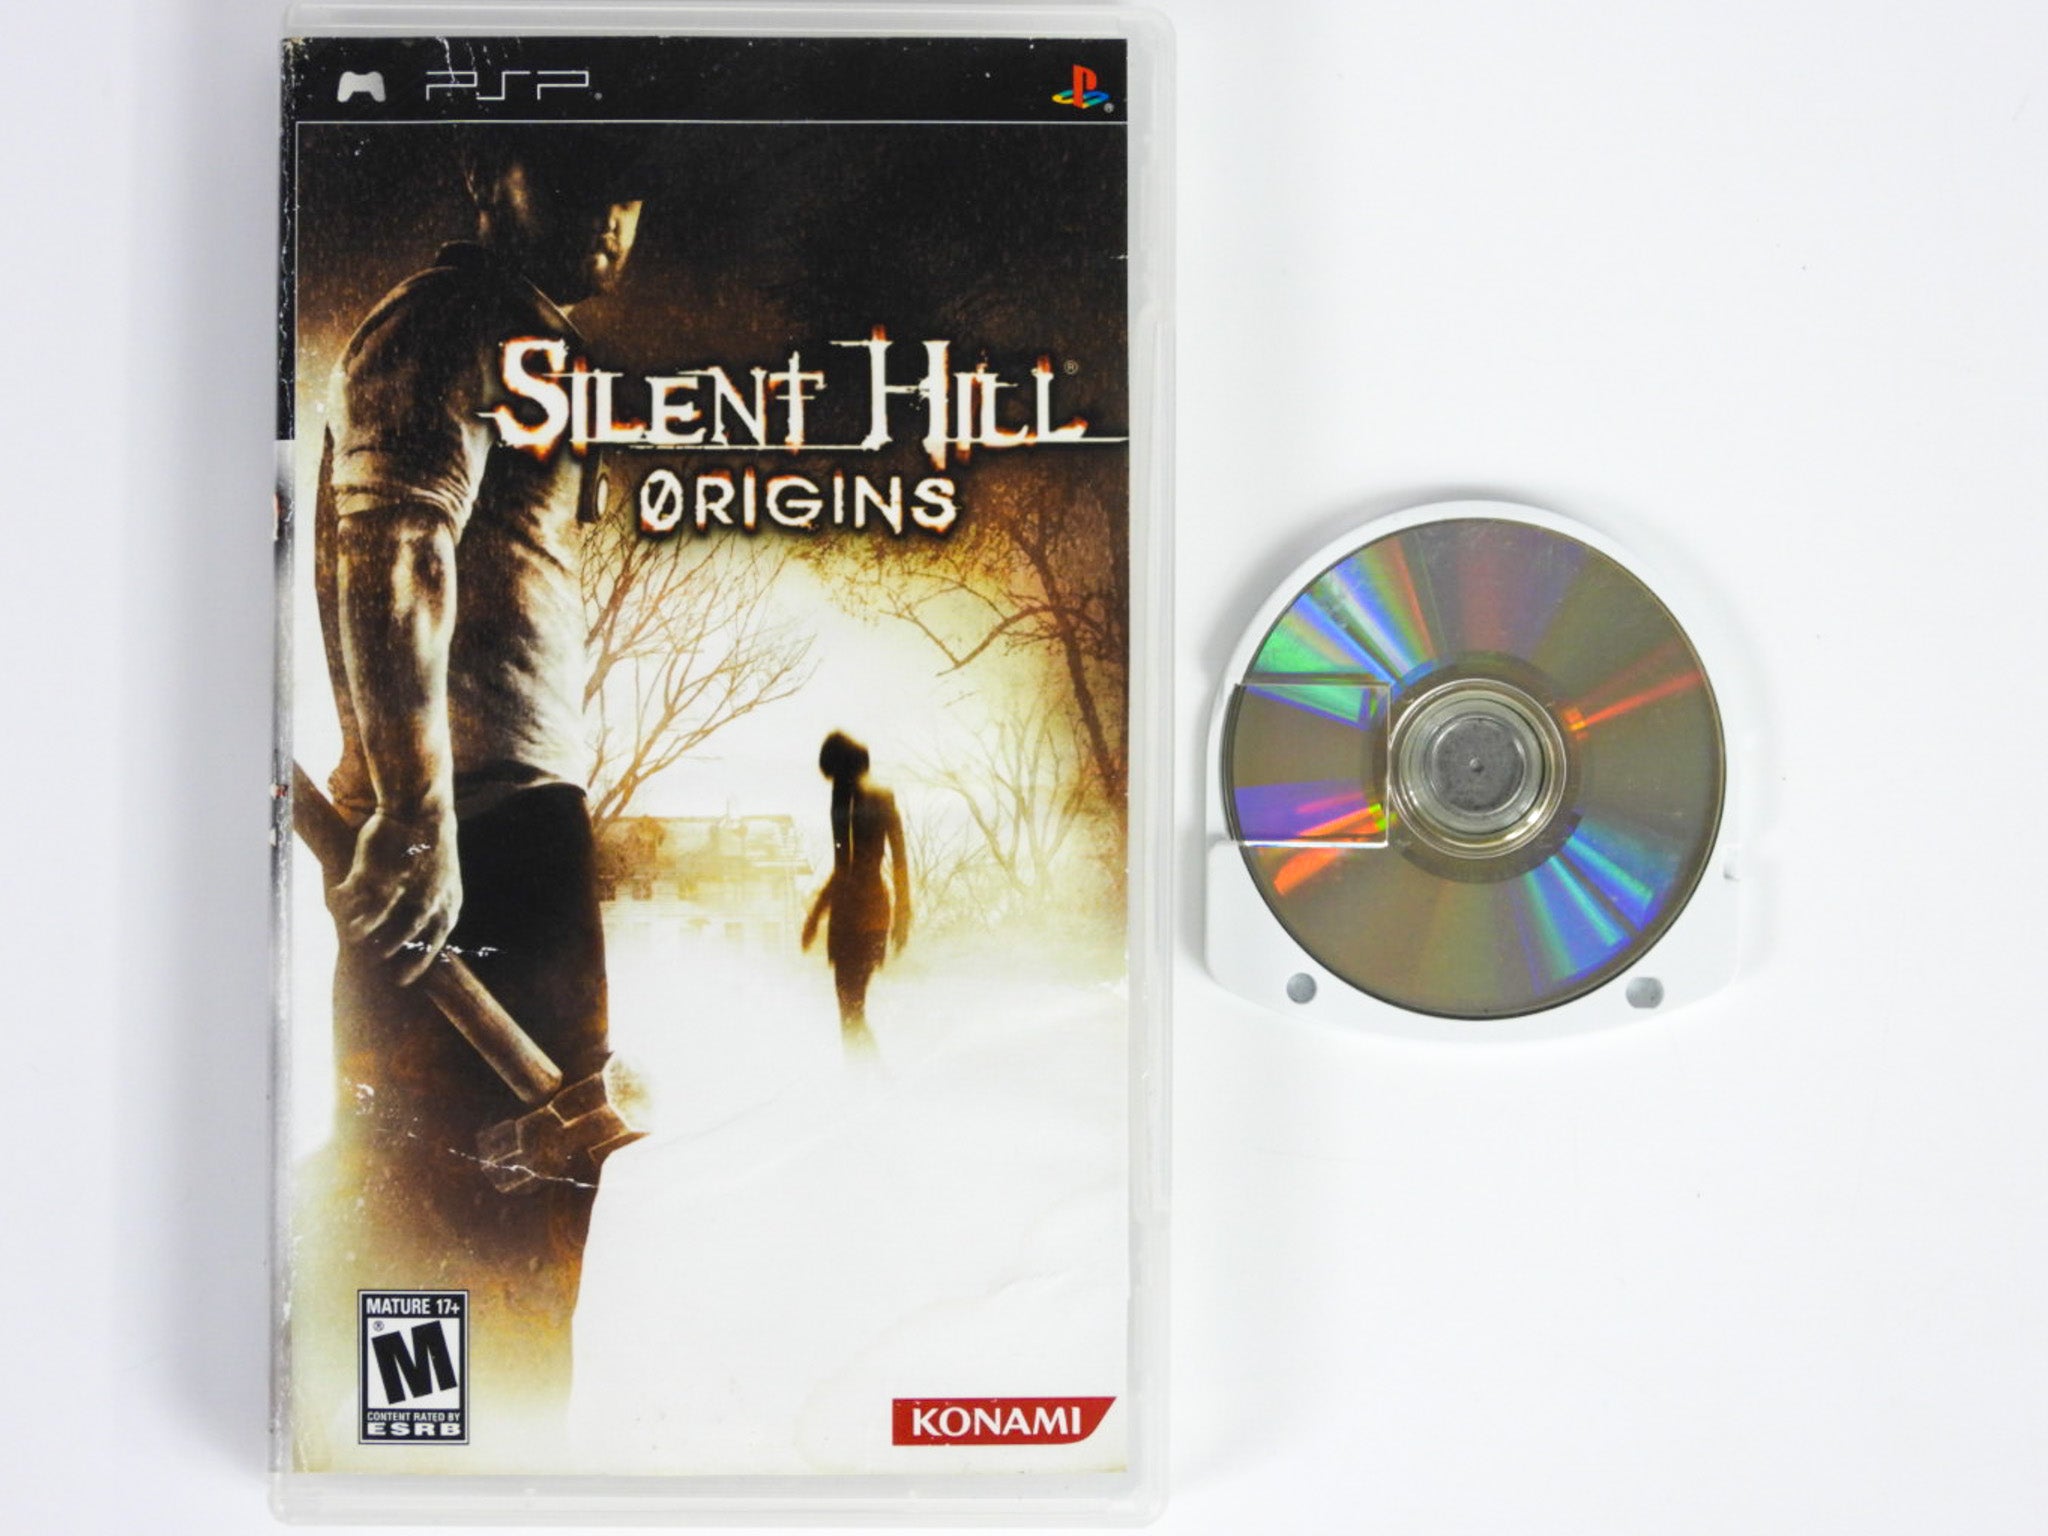 Silent Hill Origins (Playstation Portable / PSP) – RetroMTL